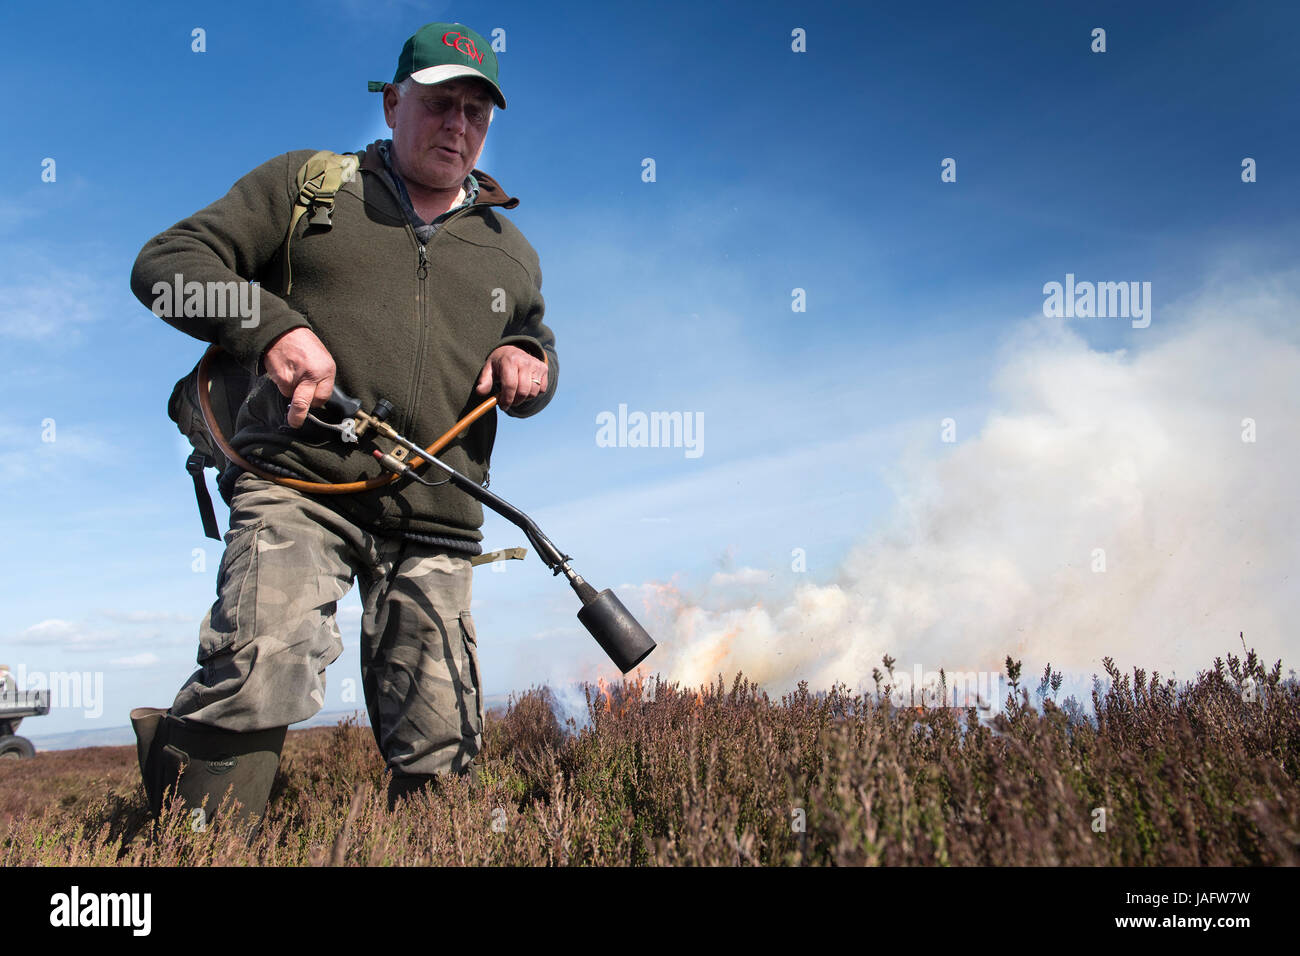 Wildhüter beginnen eines Feuers auf Grouse Moor im Frühjahr. Yorkshire Dales, UK. Stockfoto